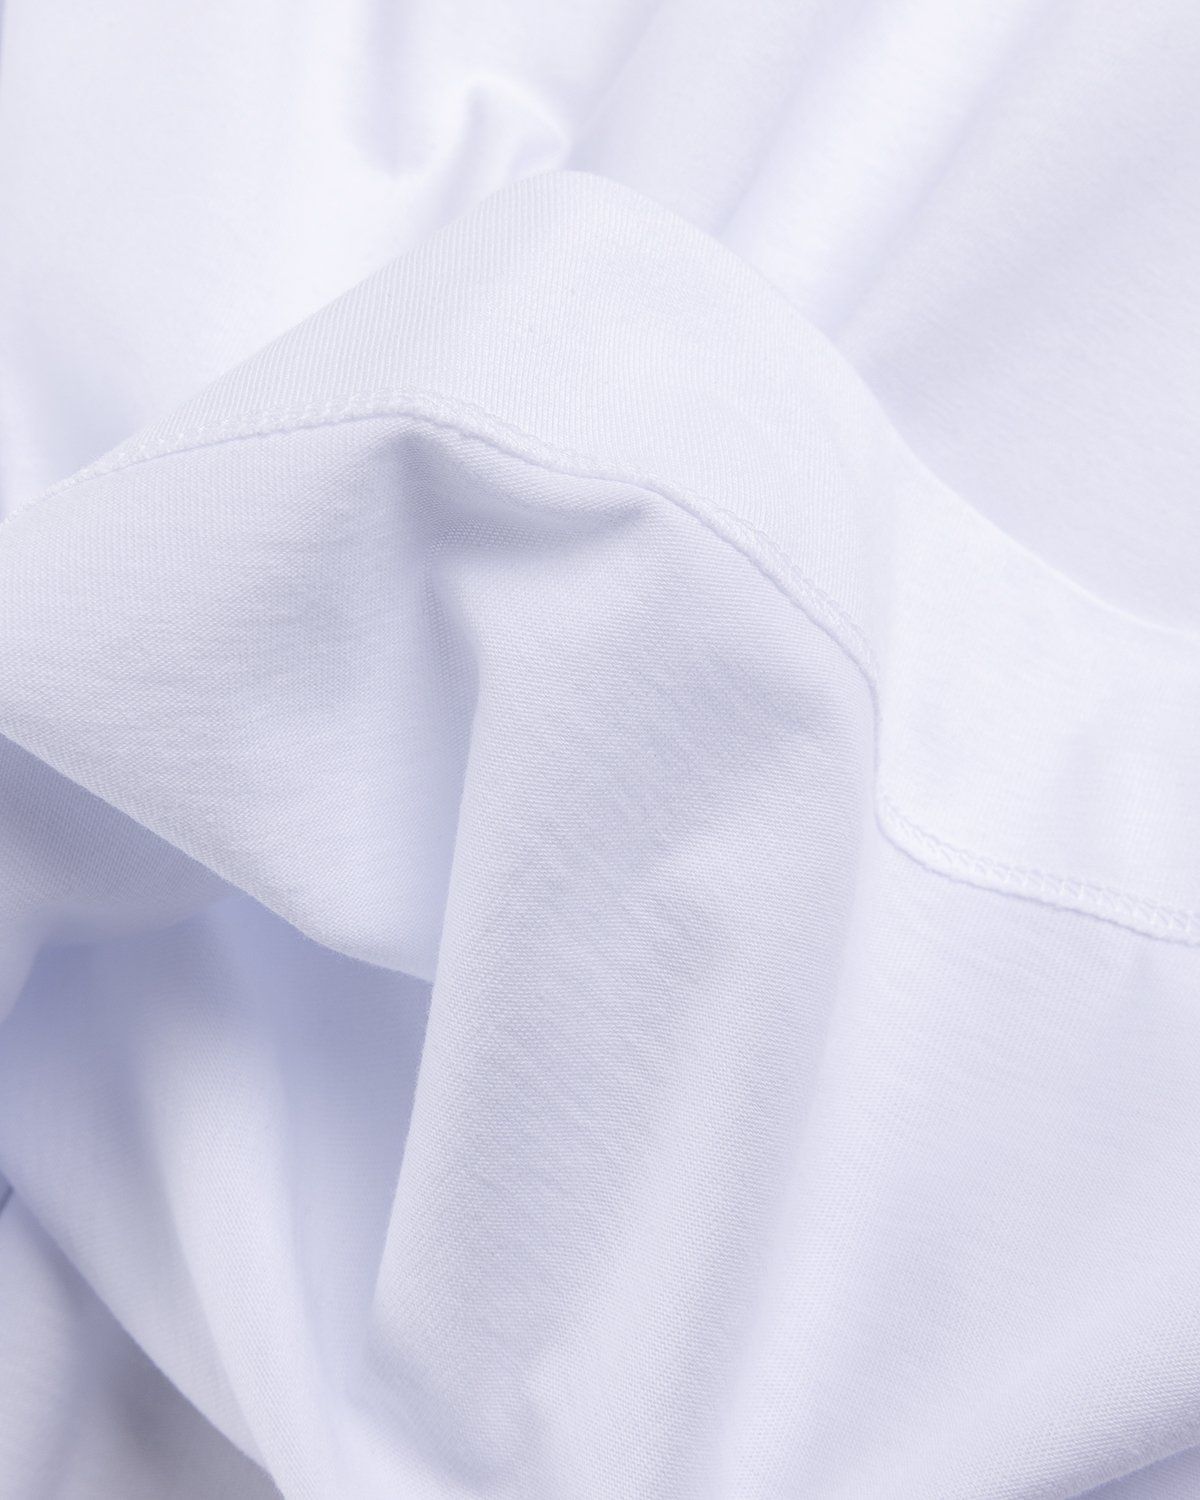 Dries van Noten – Hen Oversized T-Shirt White - Tops - White - Image 4